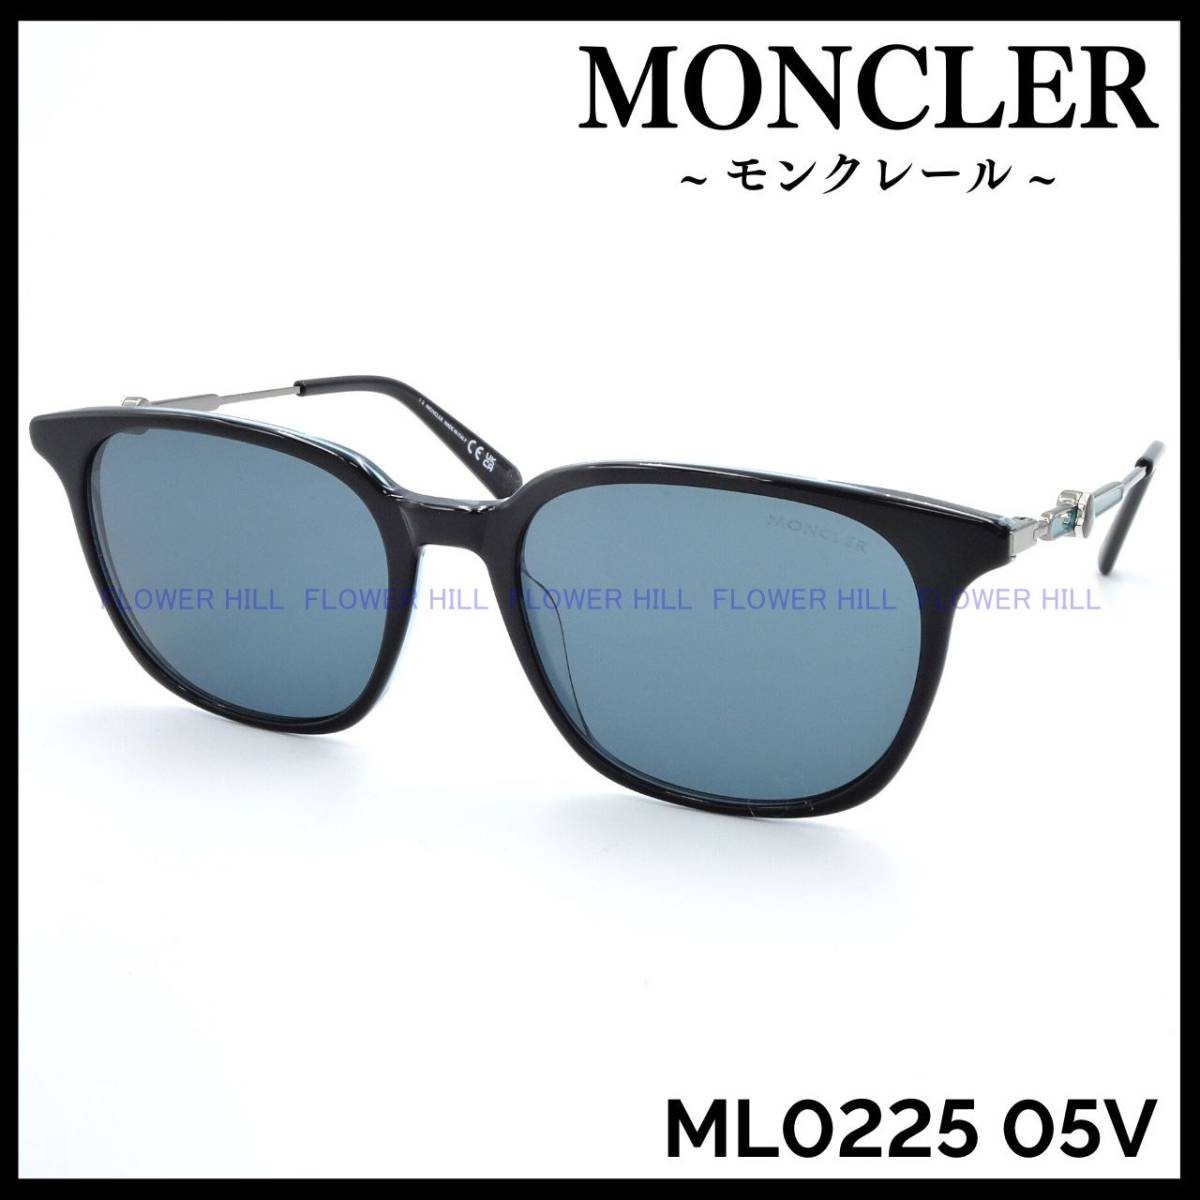 【新品・送料無料】モンクレール MONCLER サングラス ウェリントン ML0225 05V ブラック/クリアーブルー イタリア製 メンズ レディース